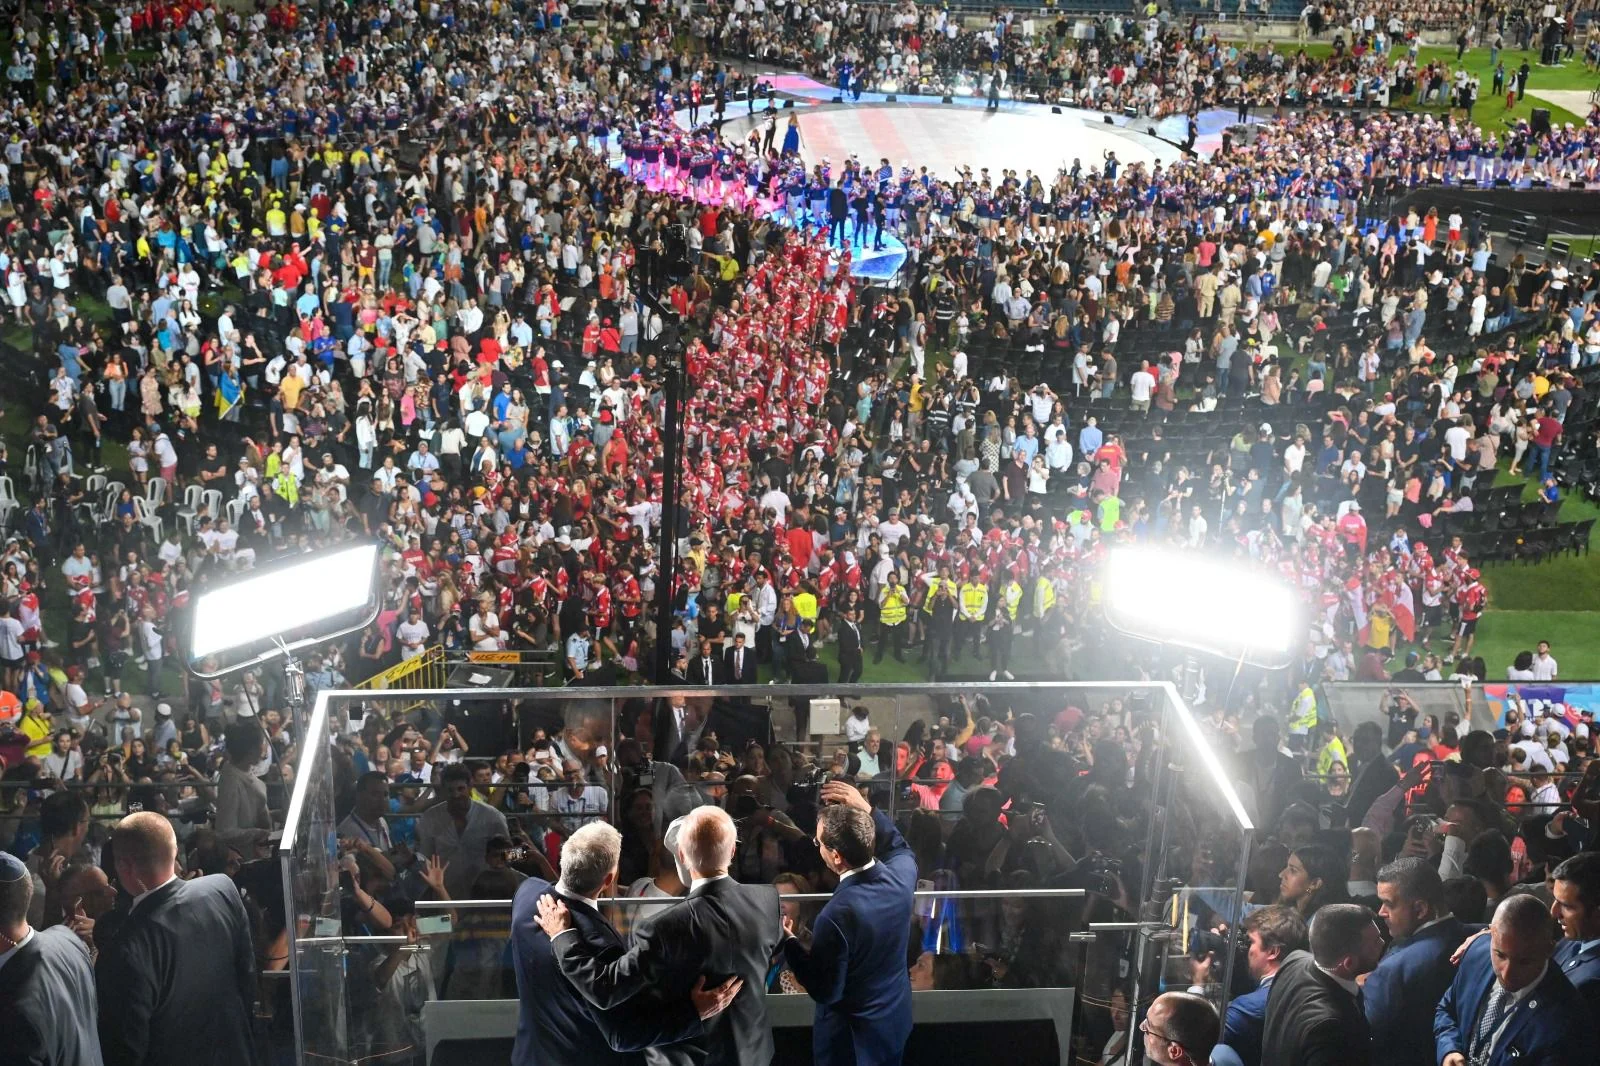 נשיא ארצות הברית ג'ו ביידן, נשיא המדינה יצחק הרצוג ורה''מ יאיר לפיד בטקס פתיחת המכביה באצטדיון טדי